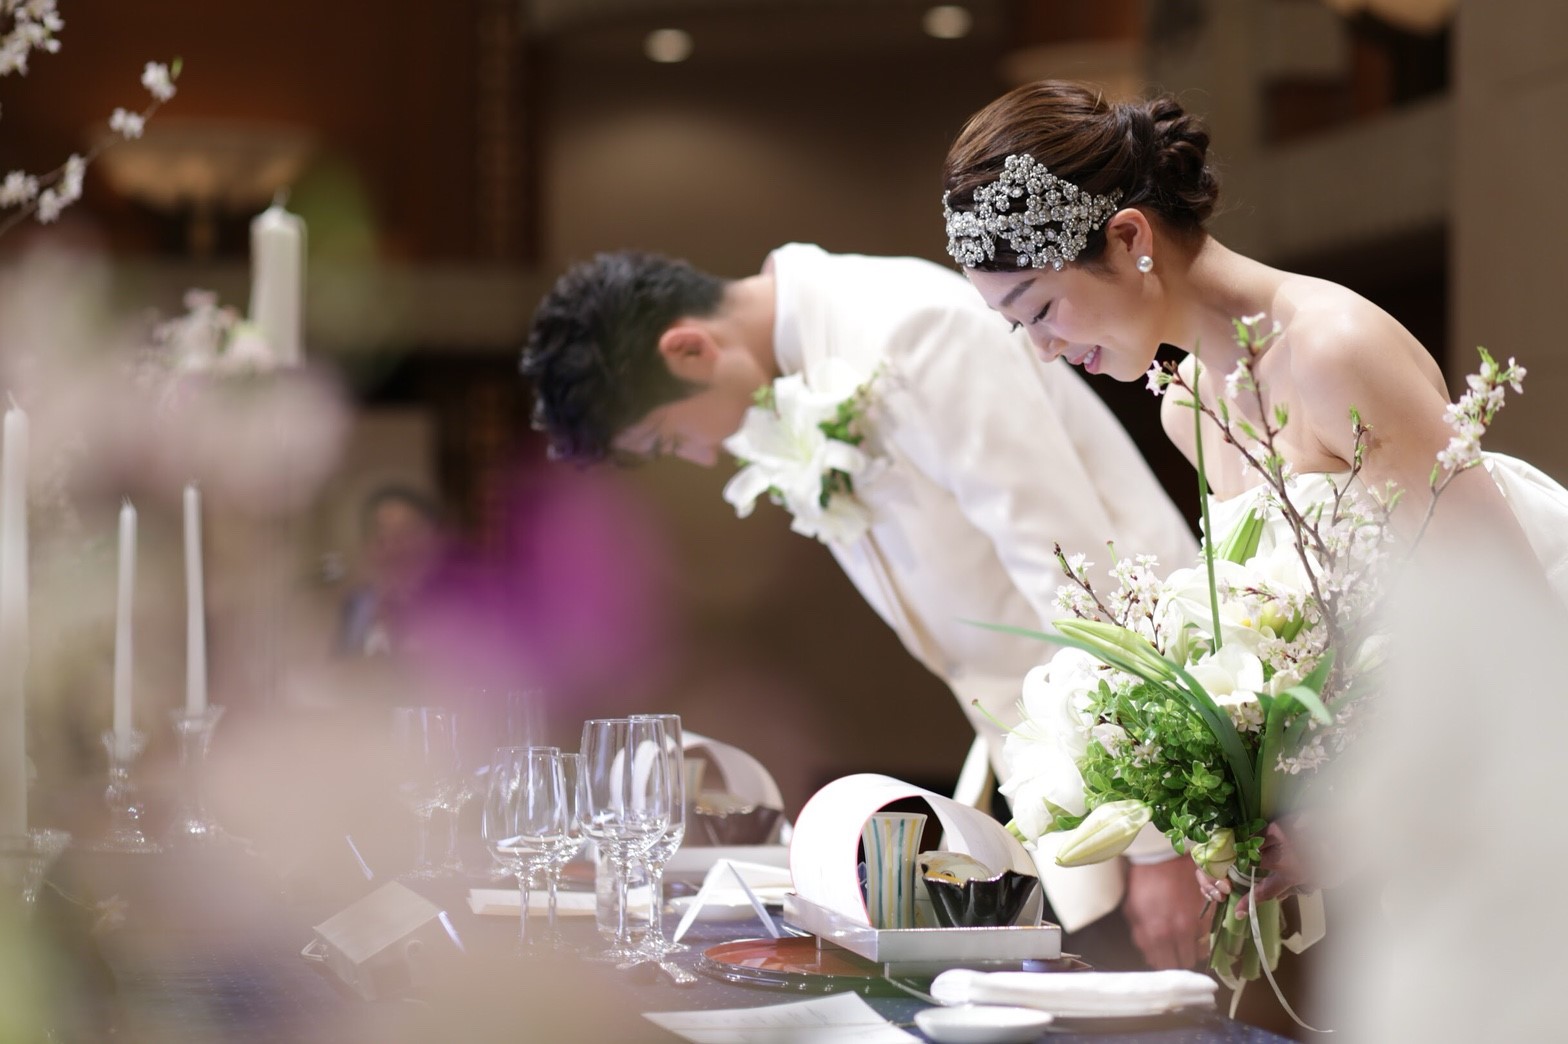 帝国ホテル 大阪で結婚式 ウェディングニュース結婚式場検索